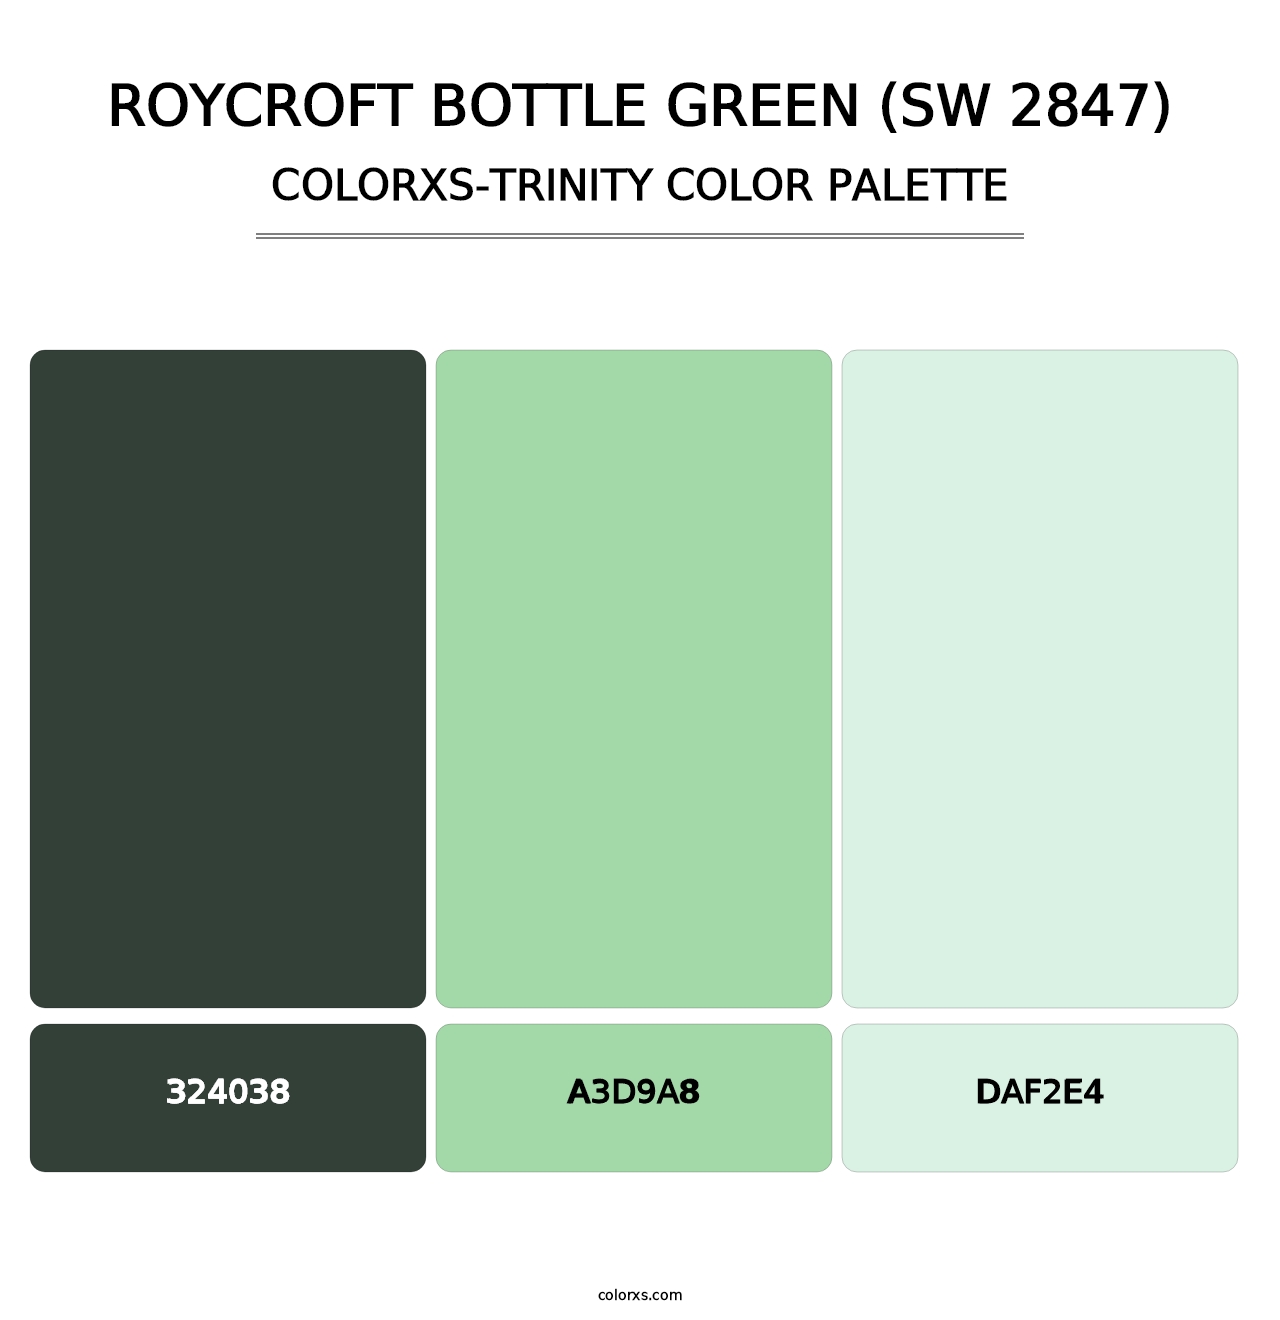 Roycroft Bottle Green (SW 2847) - Colorxs Trinity Palette